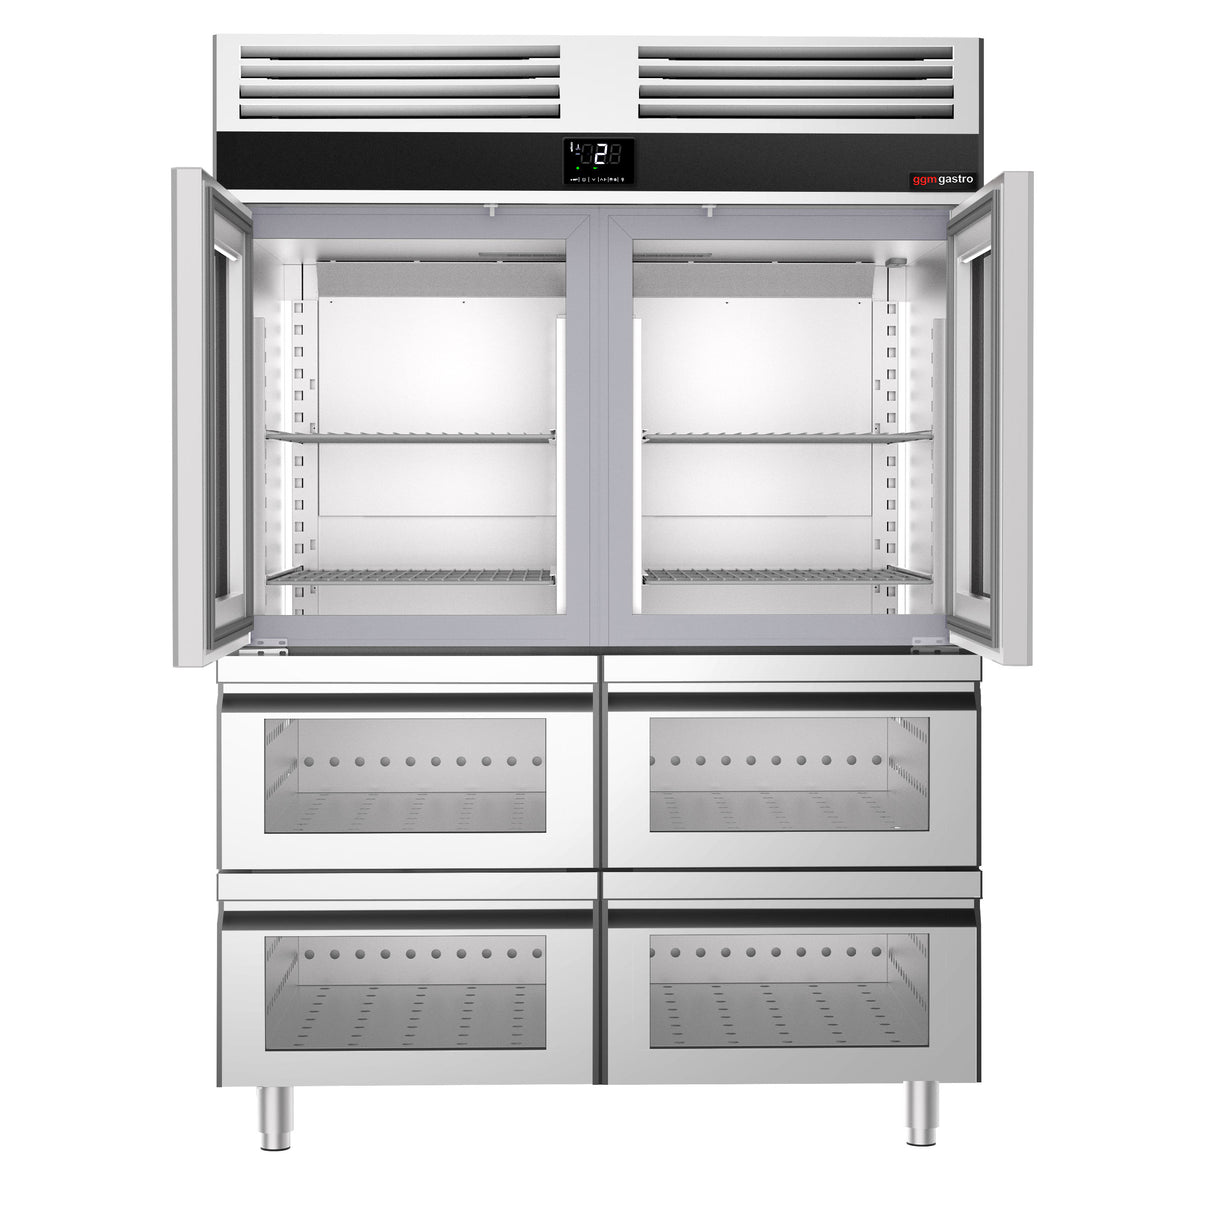 Kjøleskap - 1,4 x 0,81 m - med 2 halvdører i glass og 4 glassskuffer 1/2